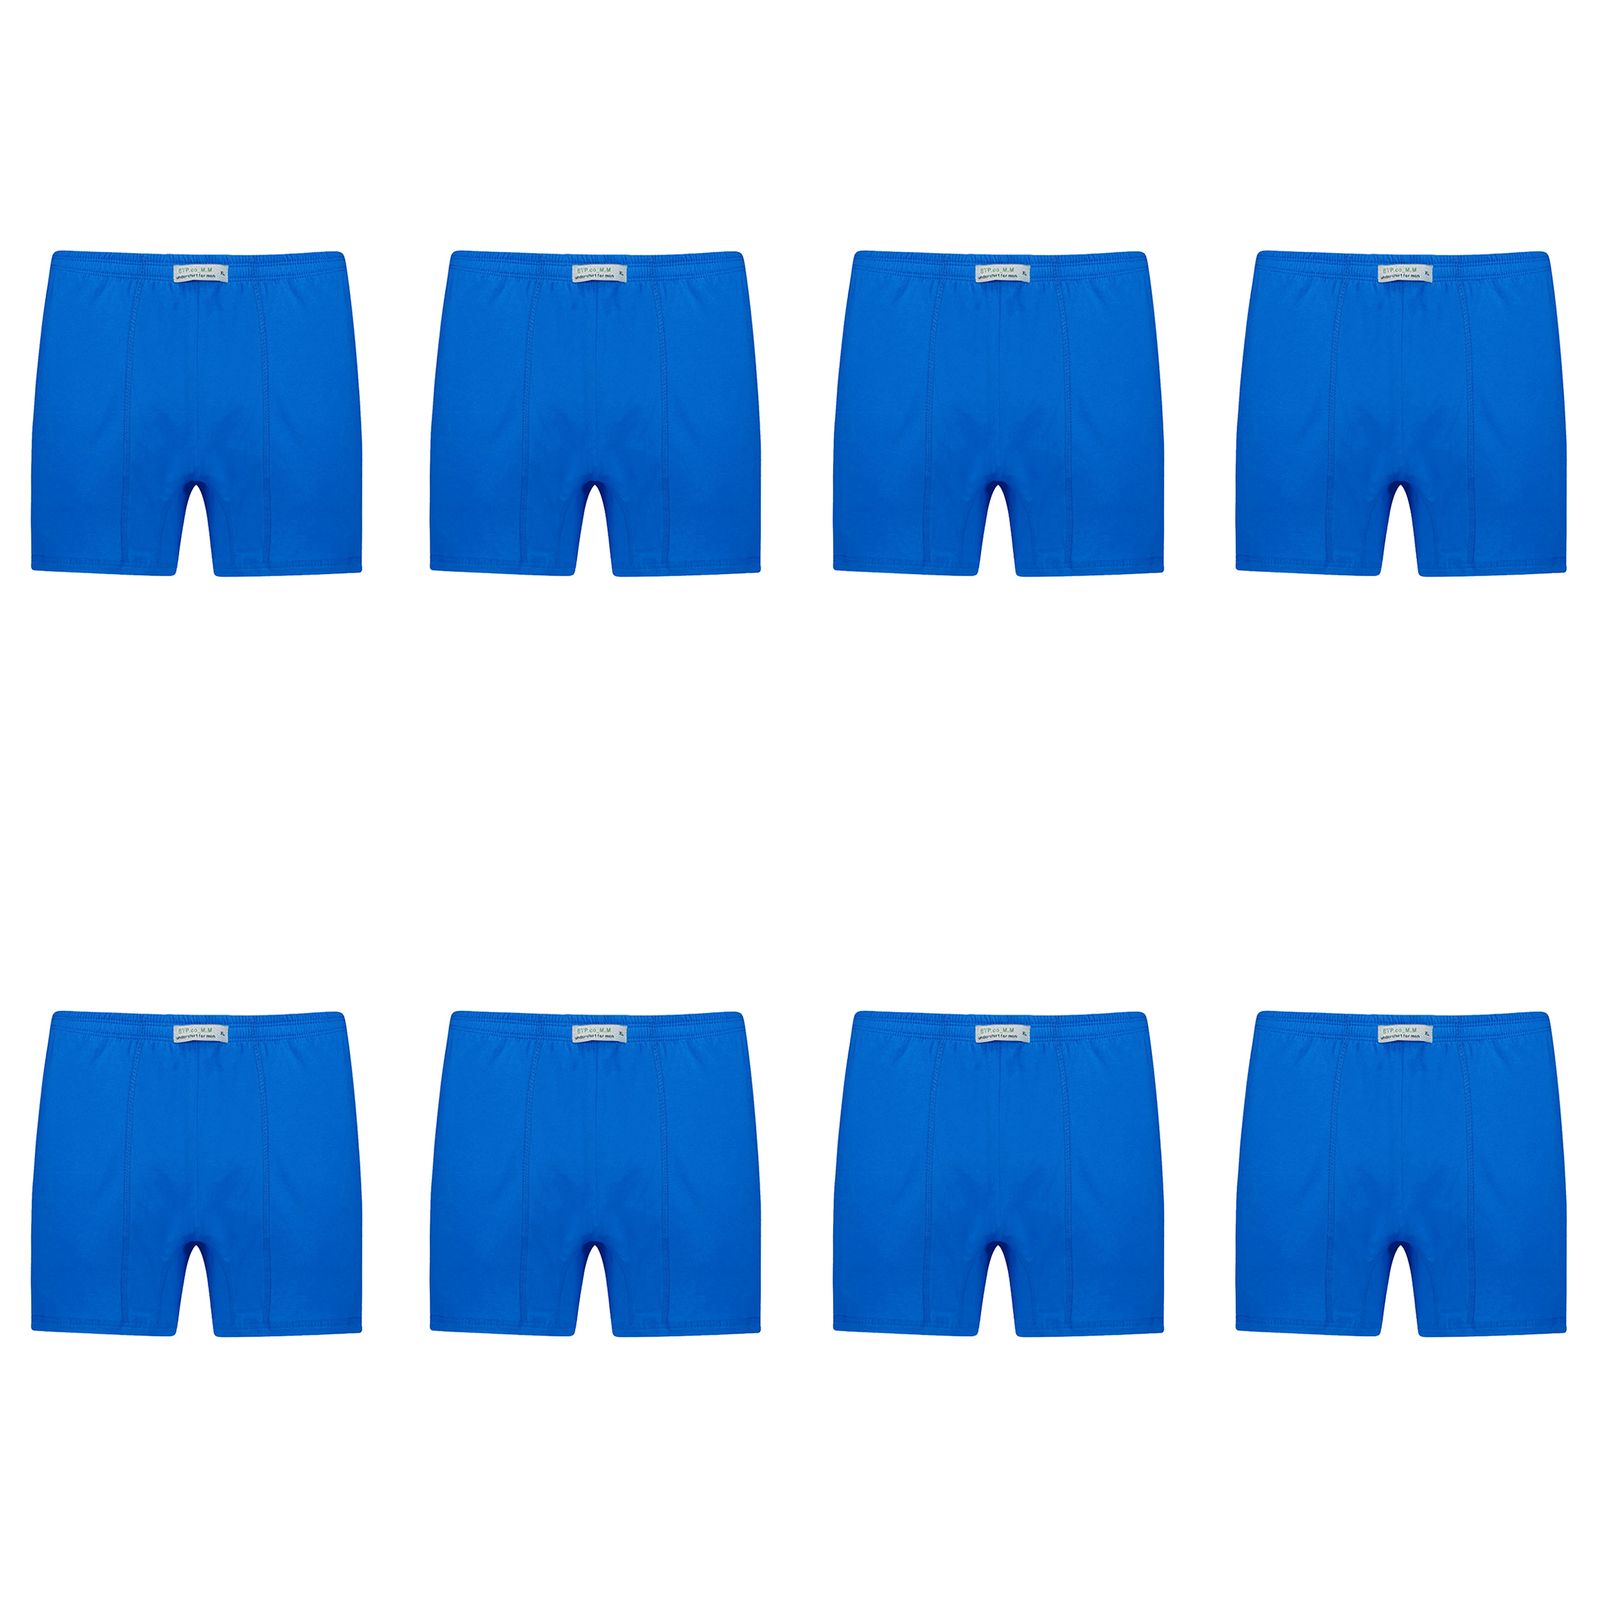 شورت پادار مردانه برهان تن پوش مدل 14-04 بسته 8 عددی رنگ آبی